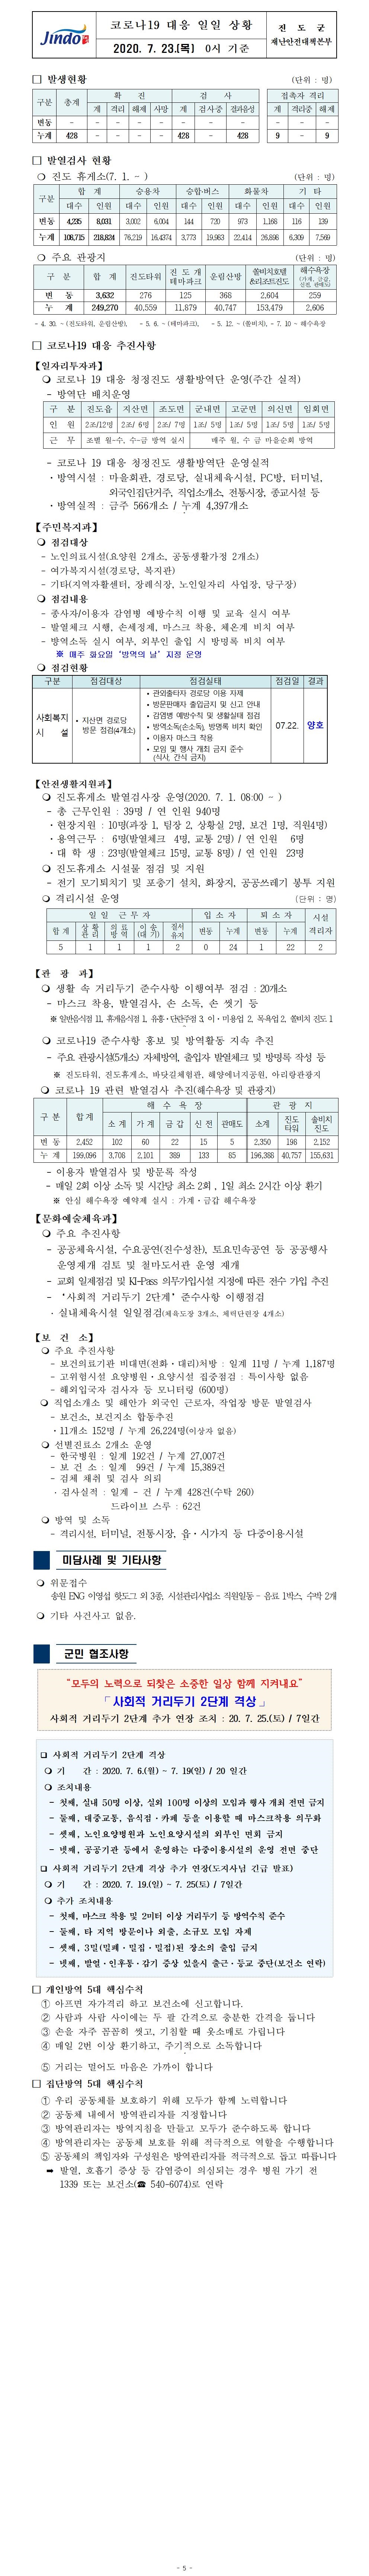 코로나19대응 일일 상황 보고(7월 23일 0시 기준) 첨부#1